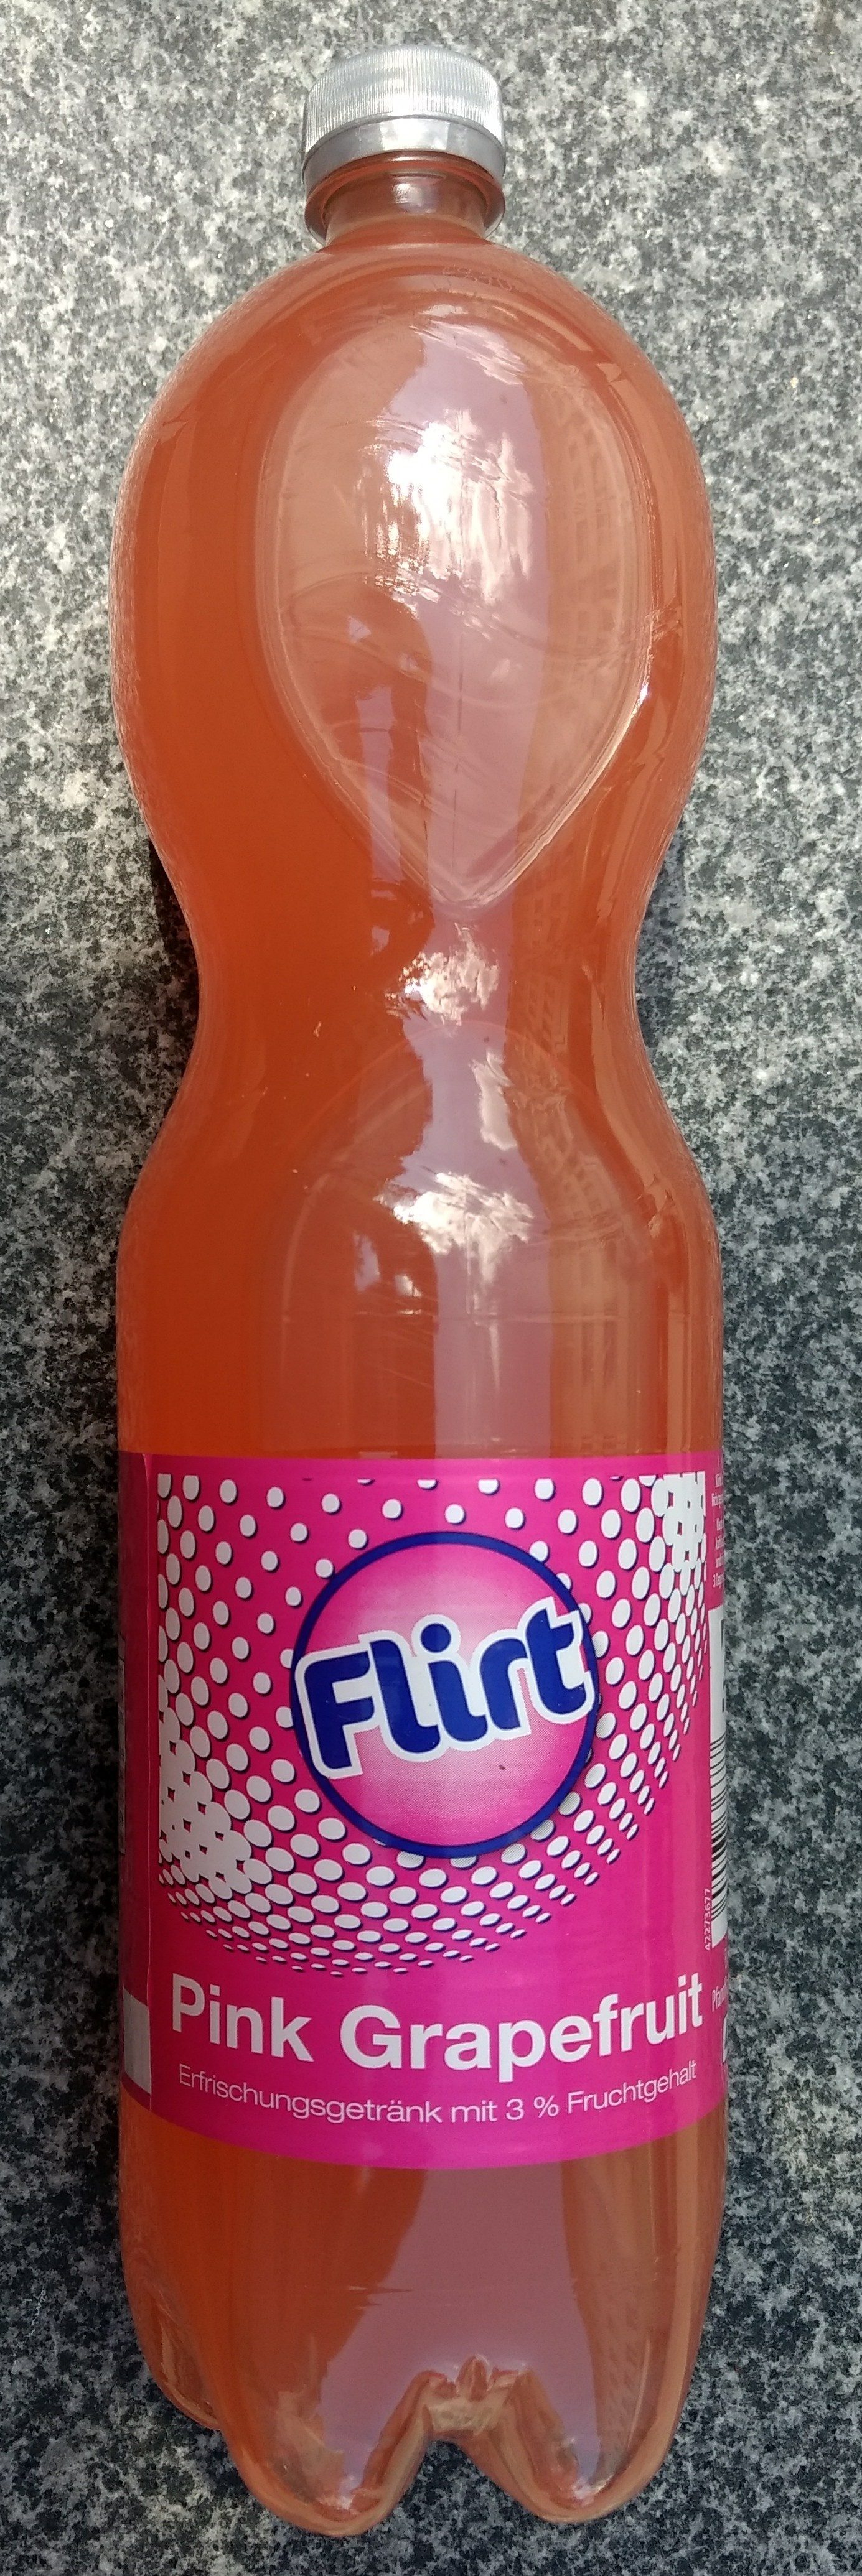 Flirt Pink Grapefruit - نتاج - de